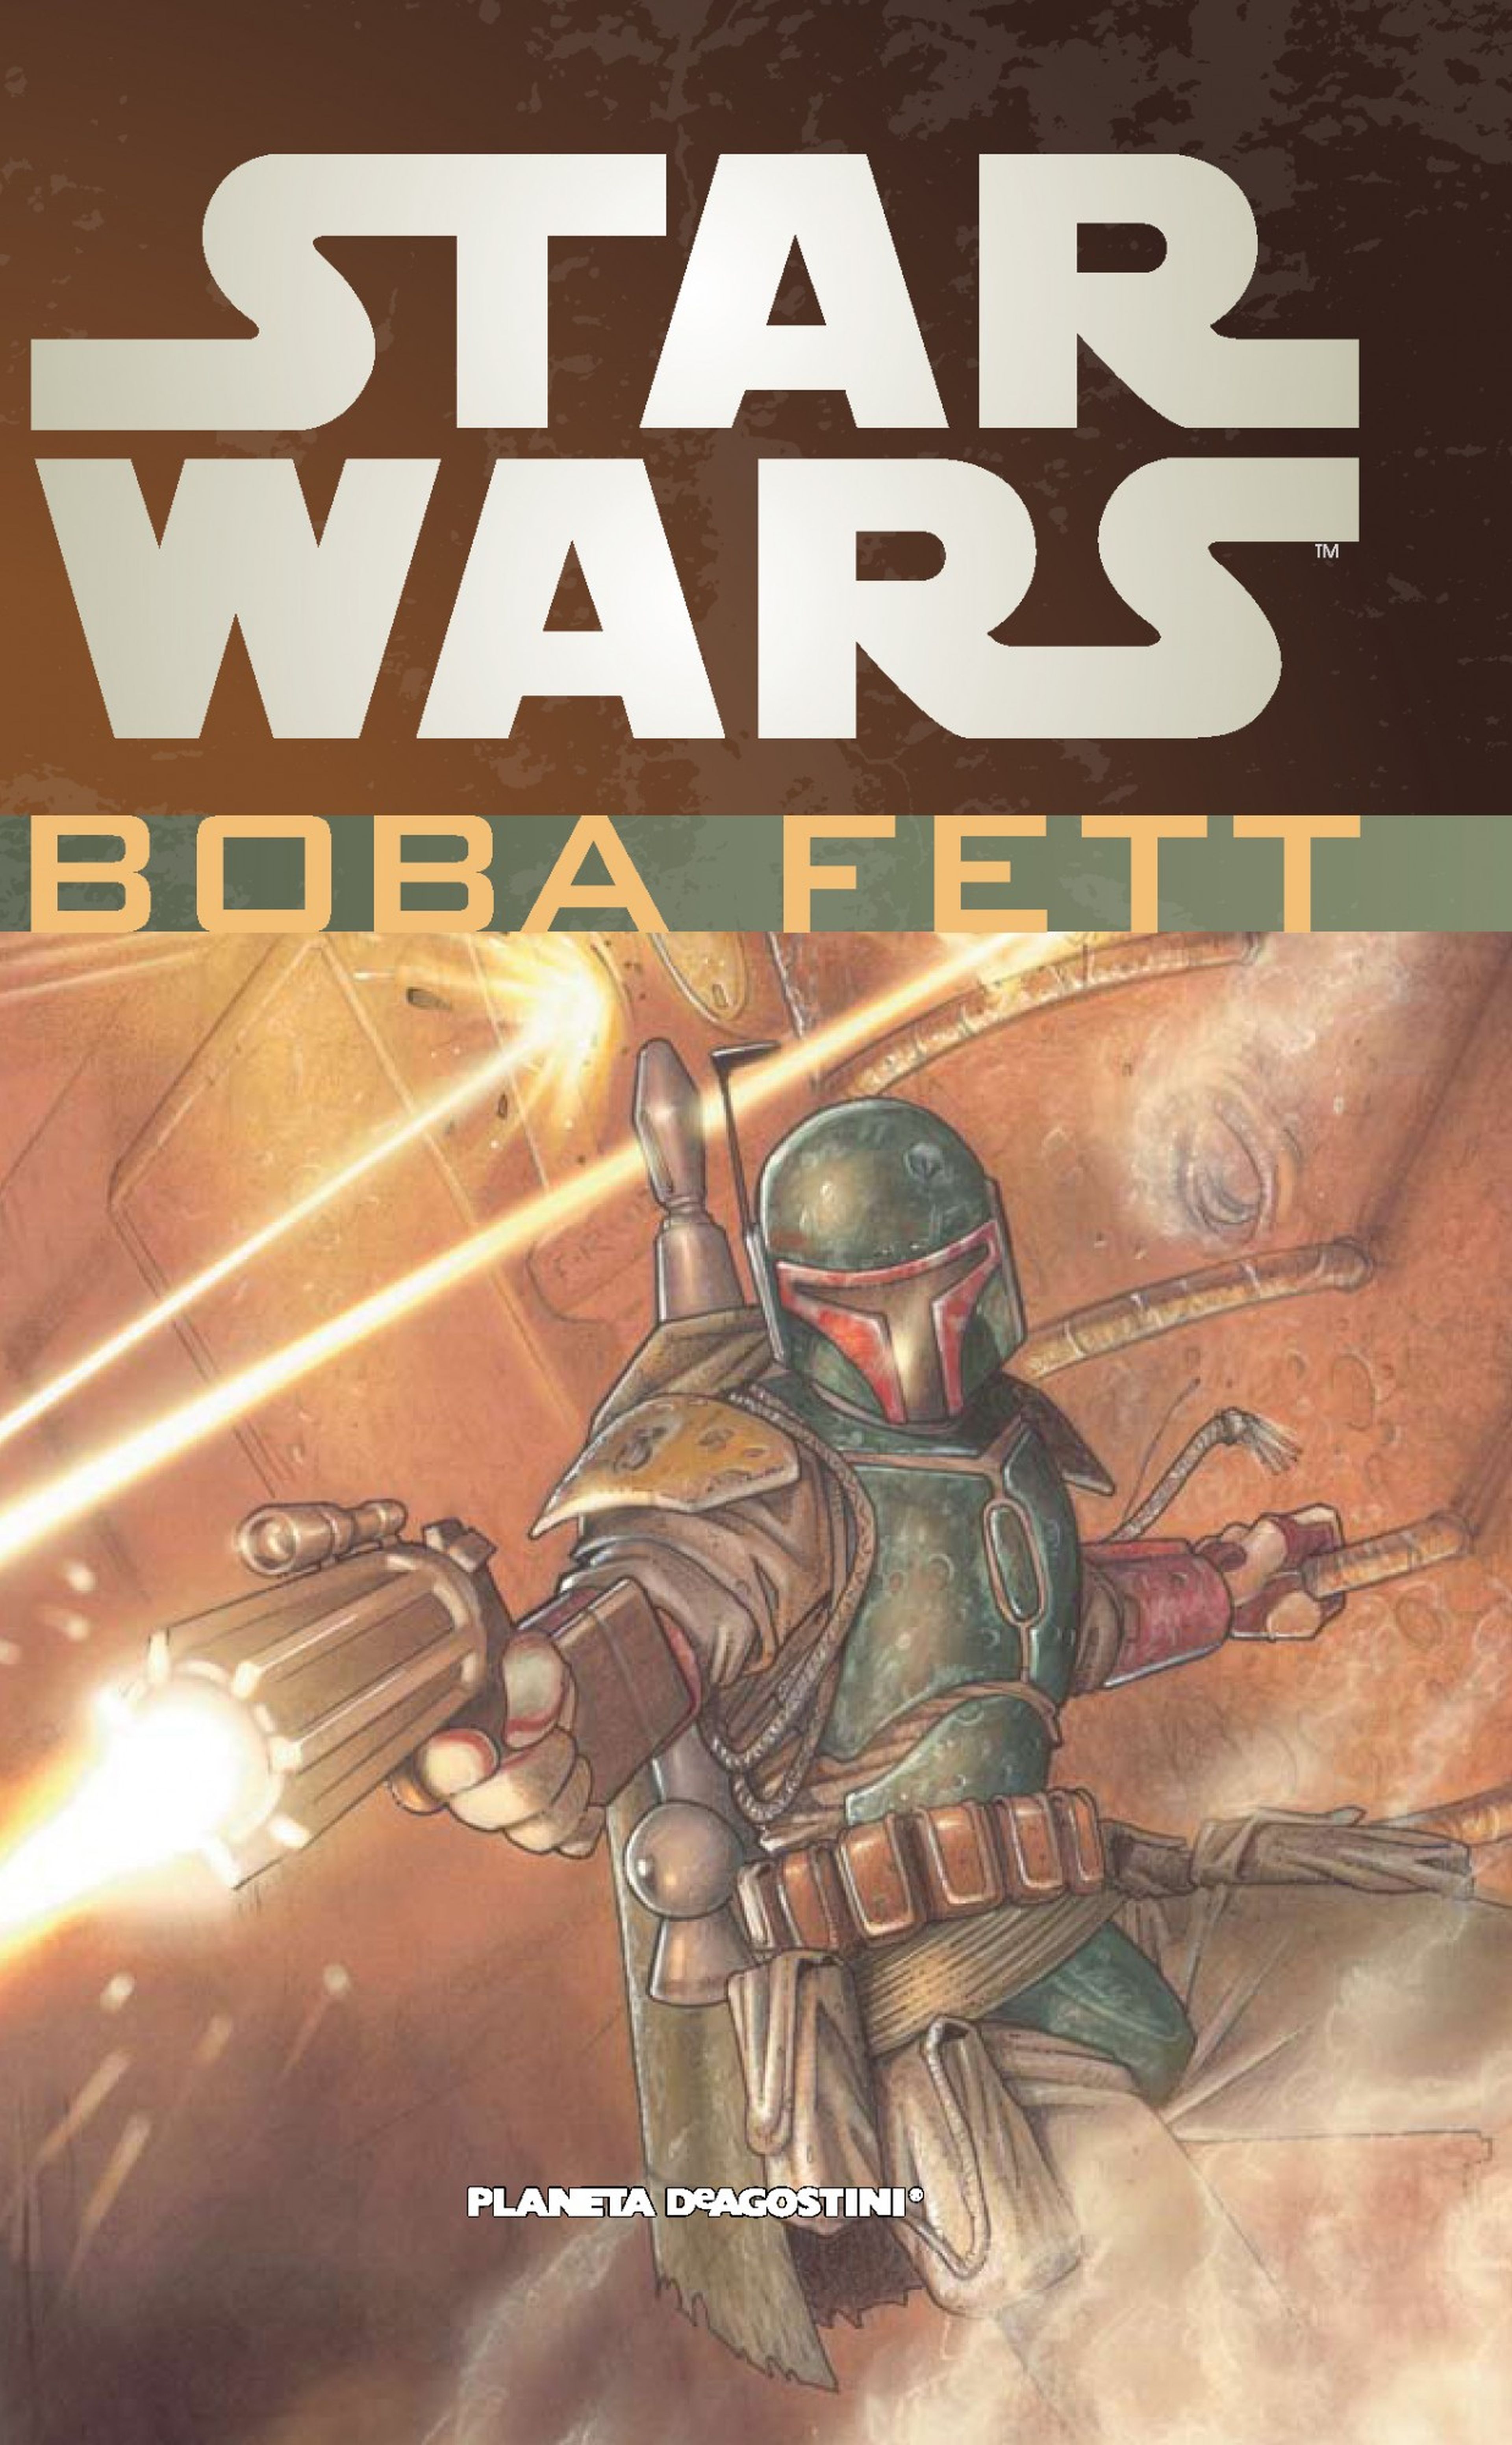 Star Wars Legends: Boba Fett - Review del Integral de cómic